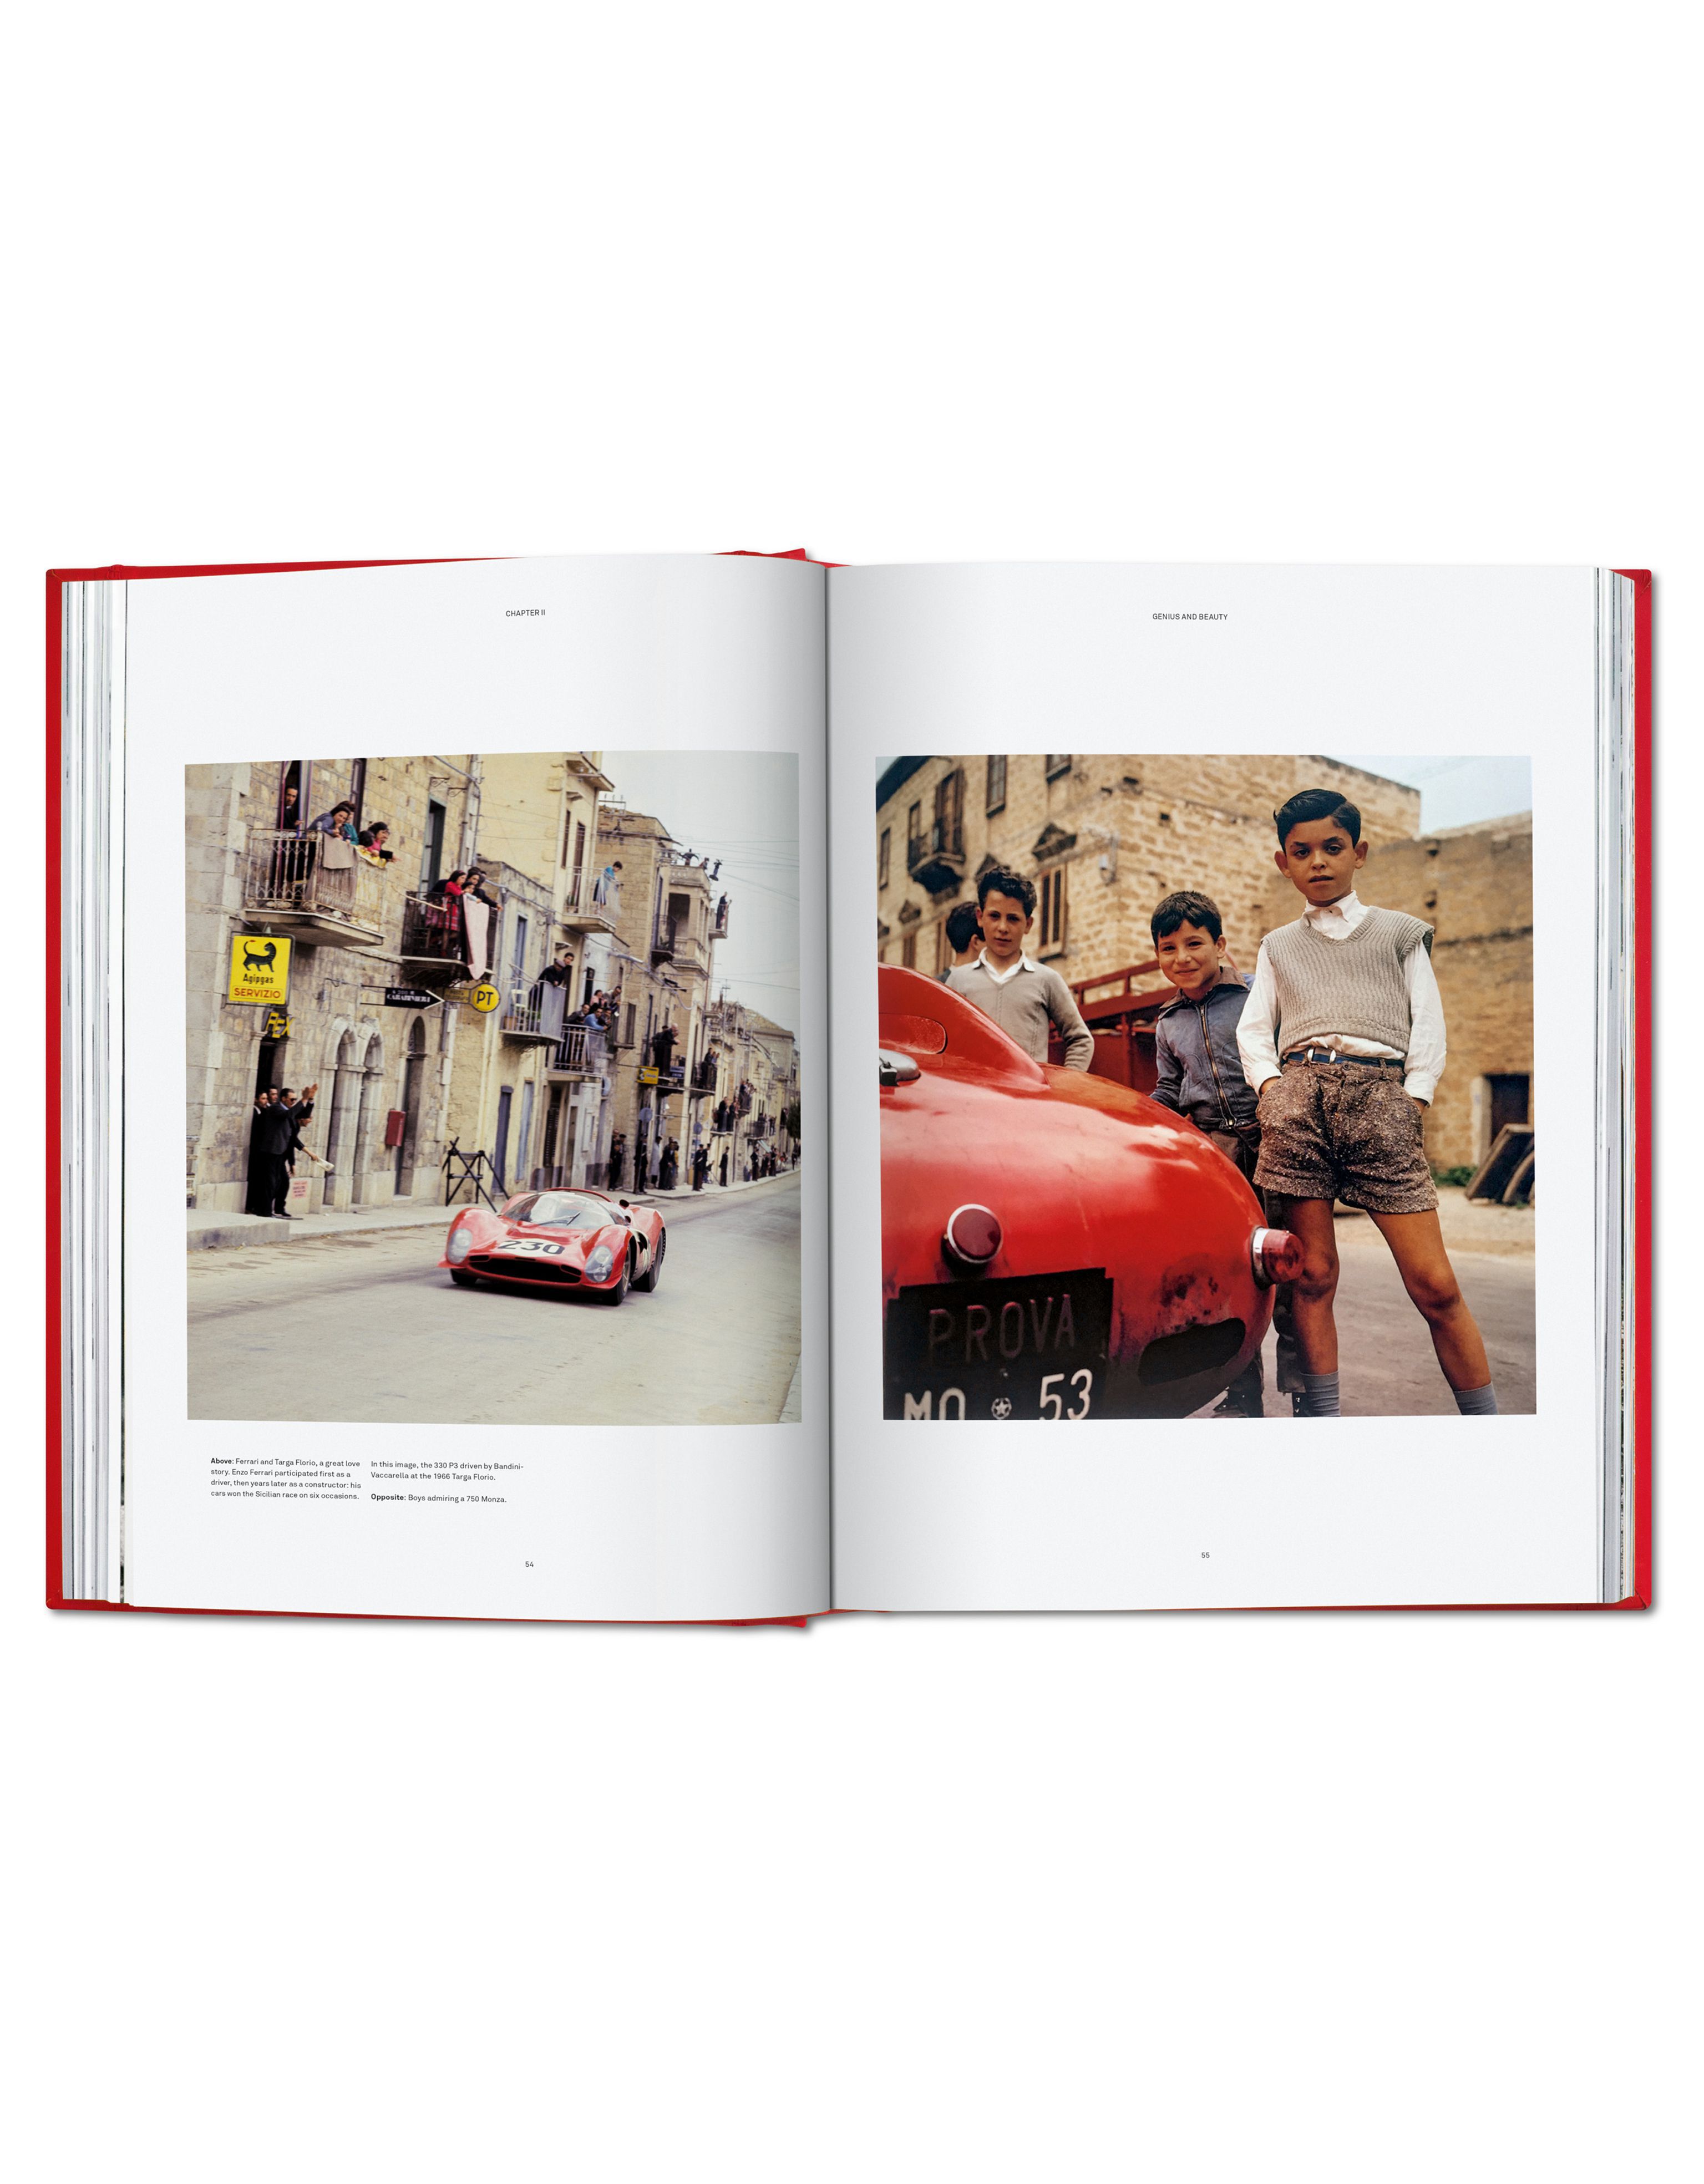 Ferrari Limited Edition Ferrari Collector's Edition book 多色 L7765f